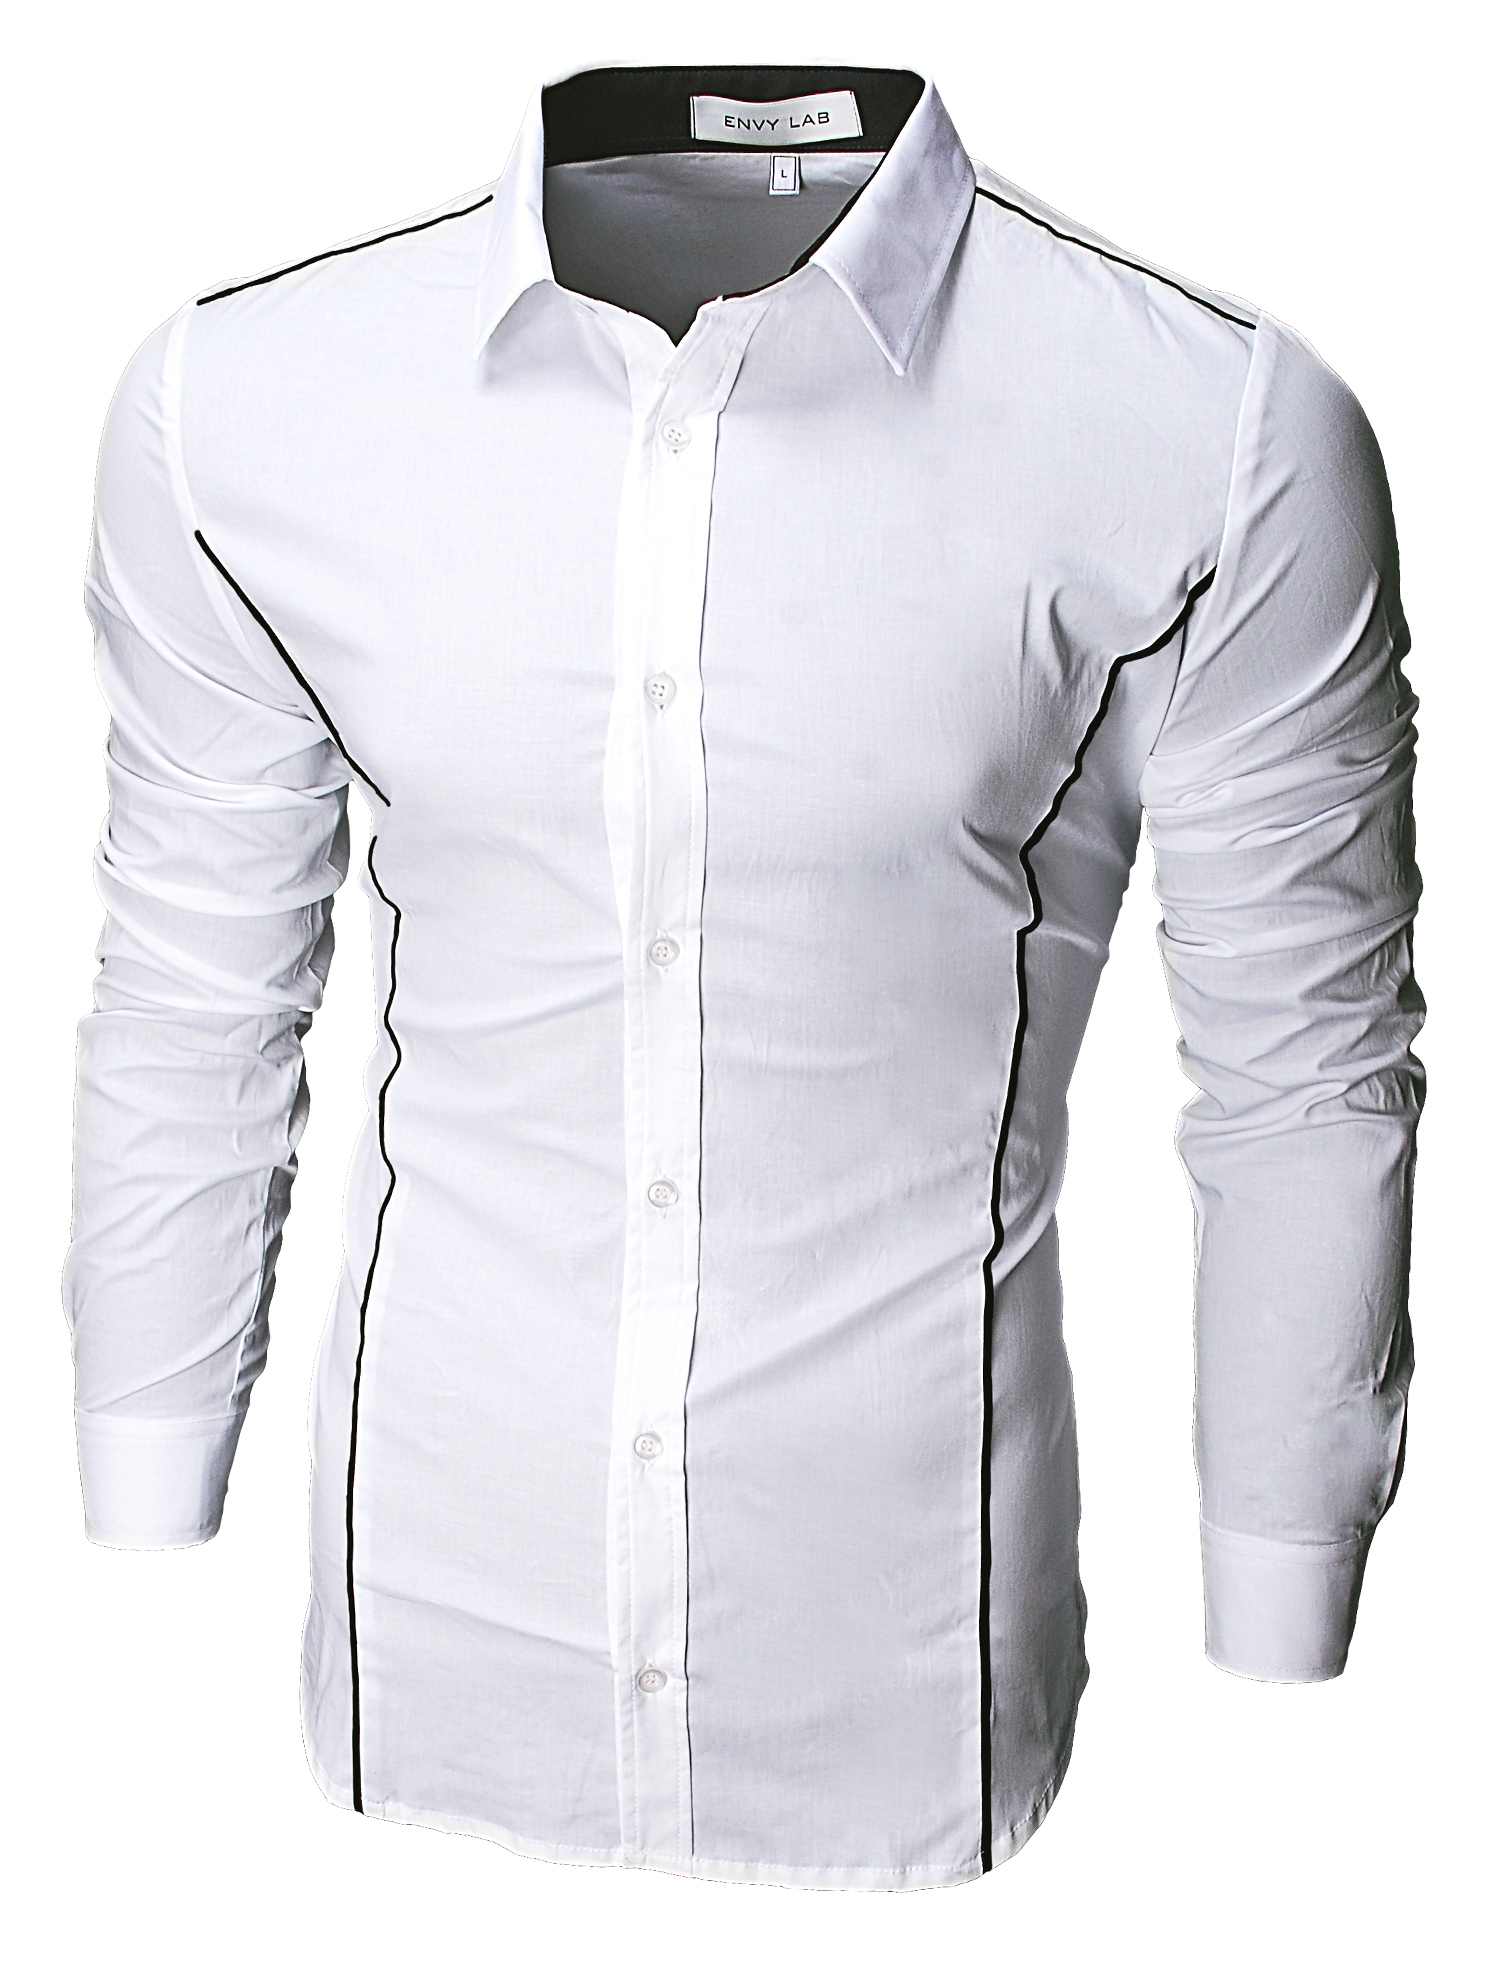 картинка товара рубашка strike white в магазине Envy LAB